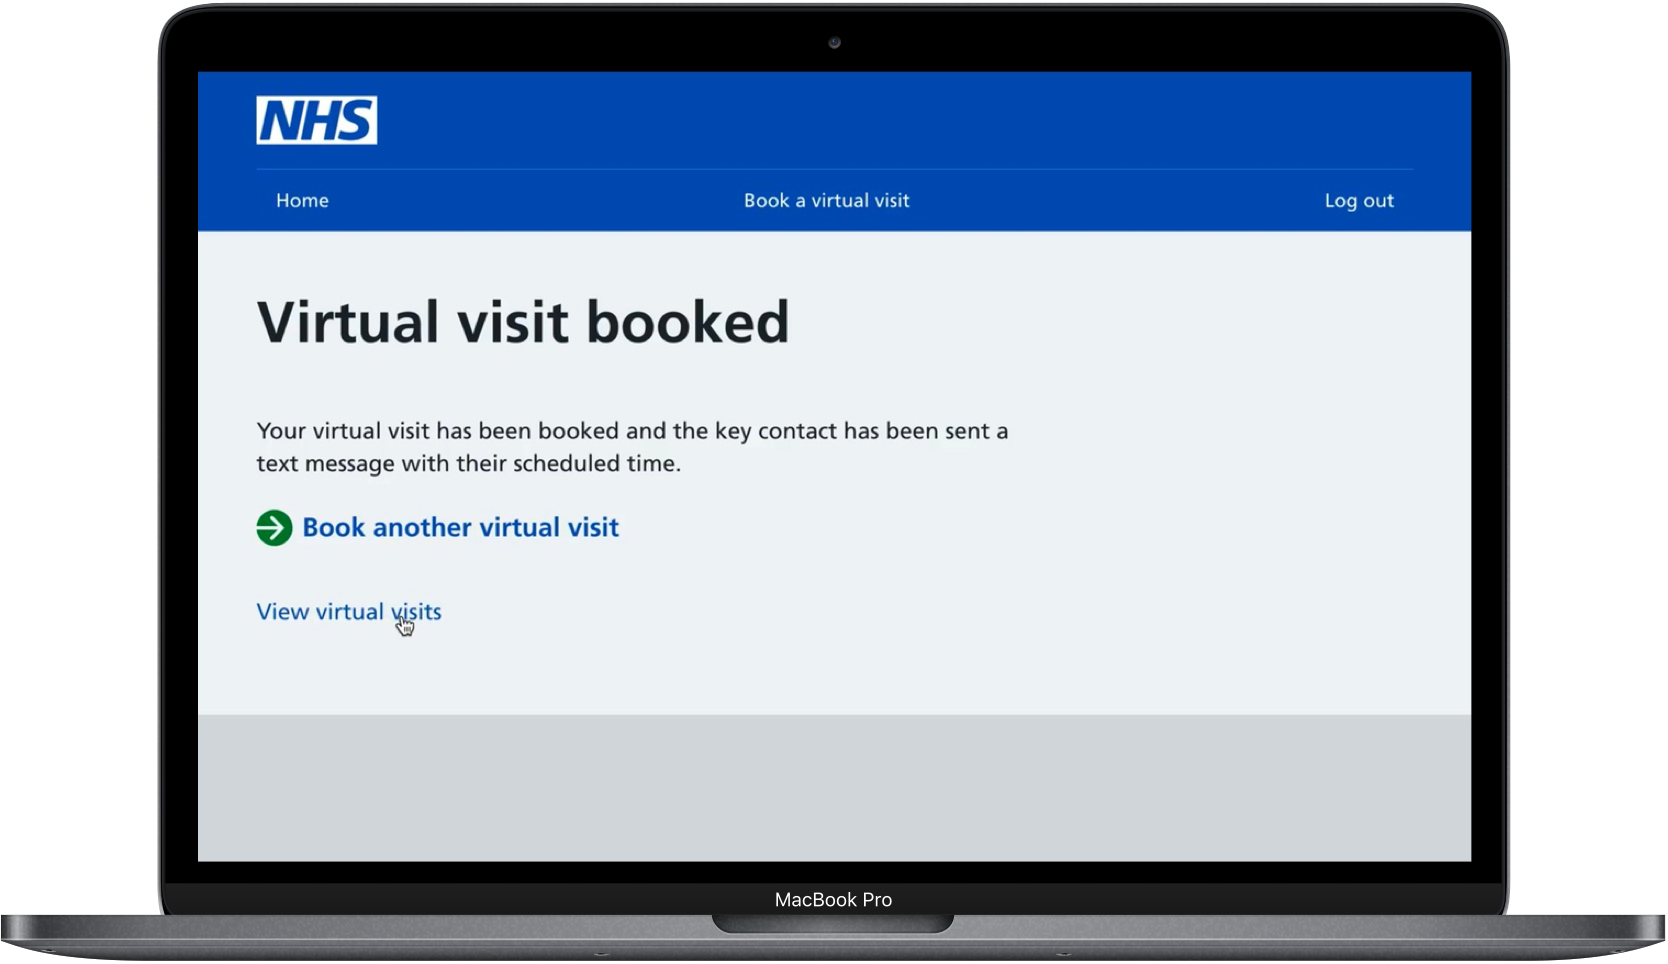 NHS Virtual visit booked laptop